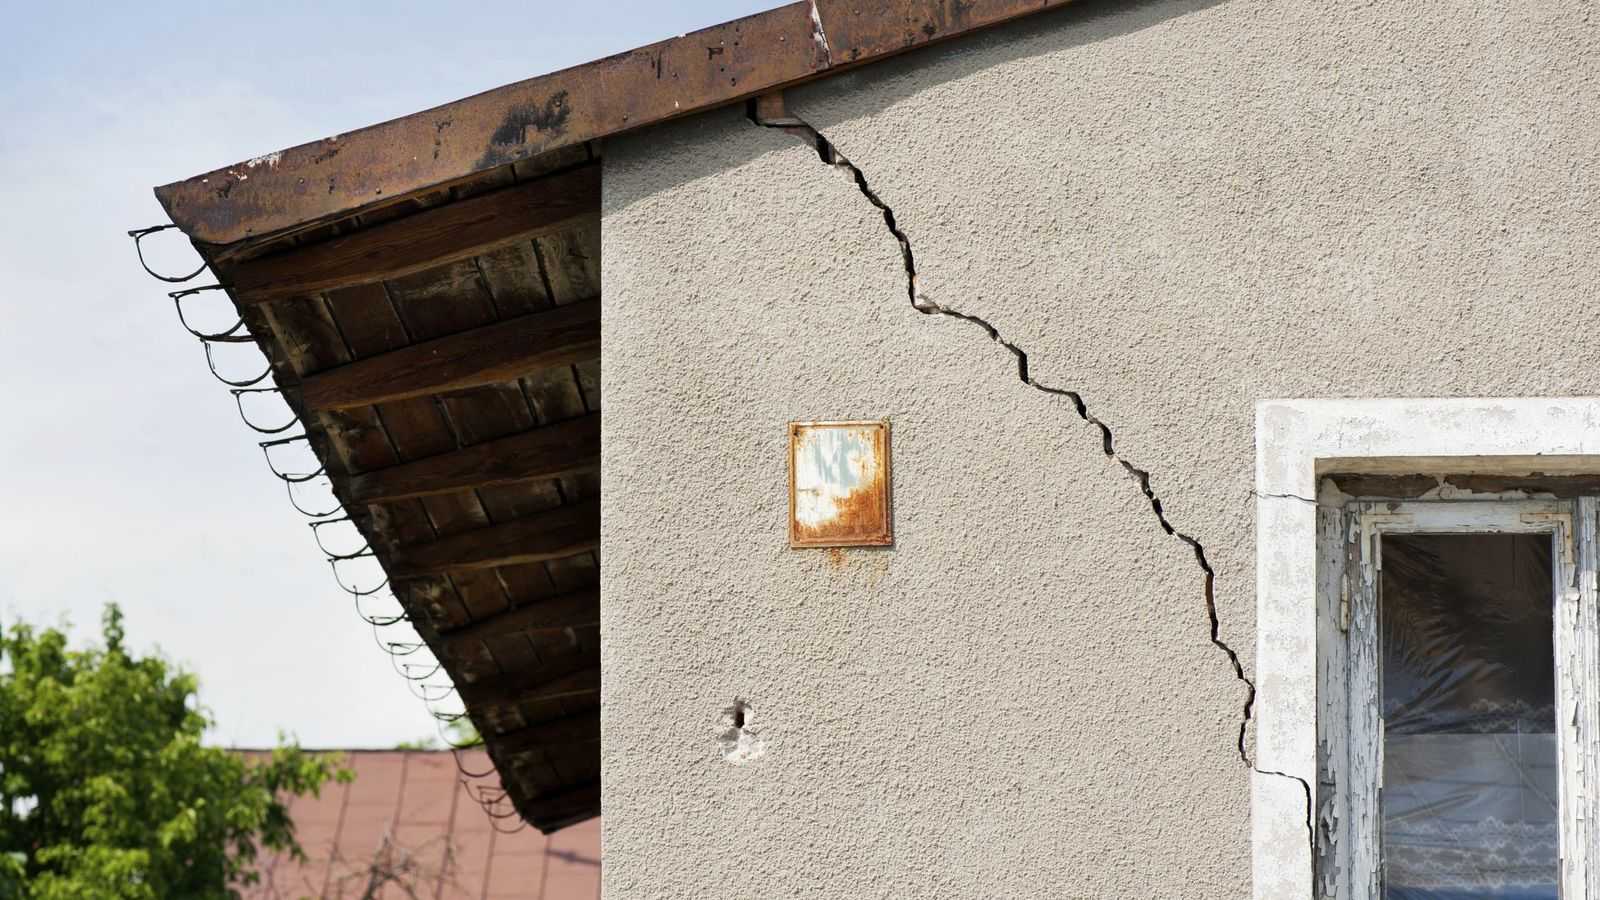 Характерные дефекты стен дома, связанные с деформациями фундамента